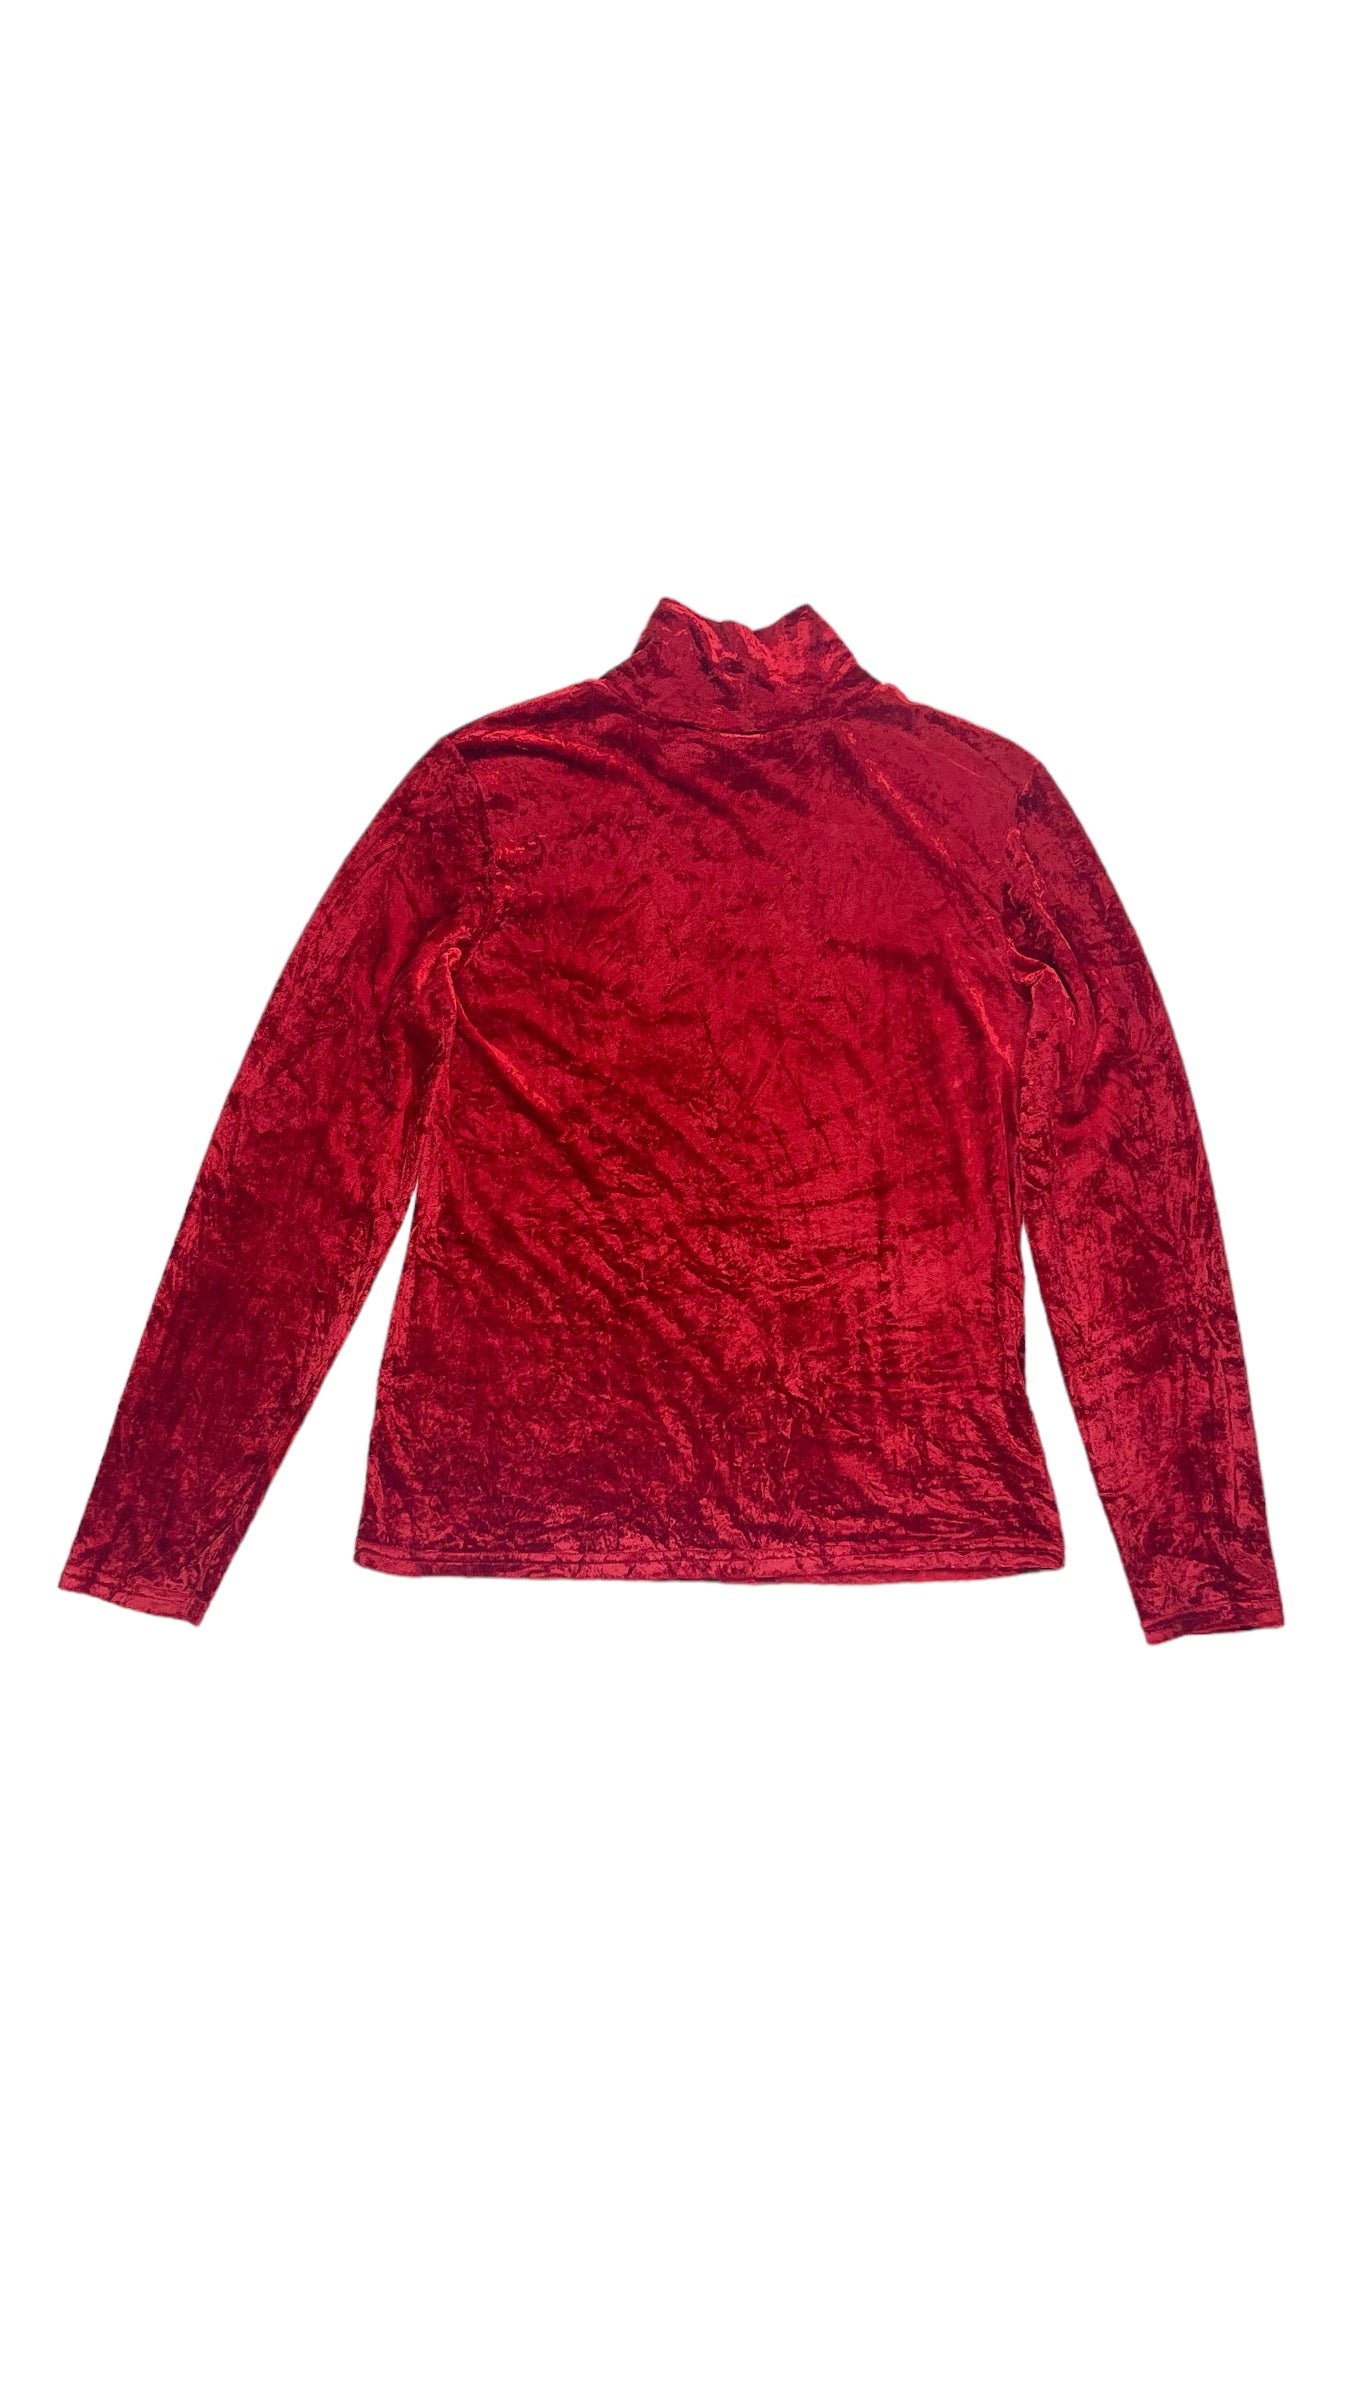 Vintage 90s red crushed velvet GAP mock neck knit long sleeve top - Size L